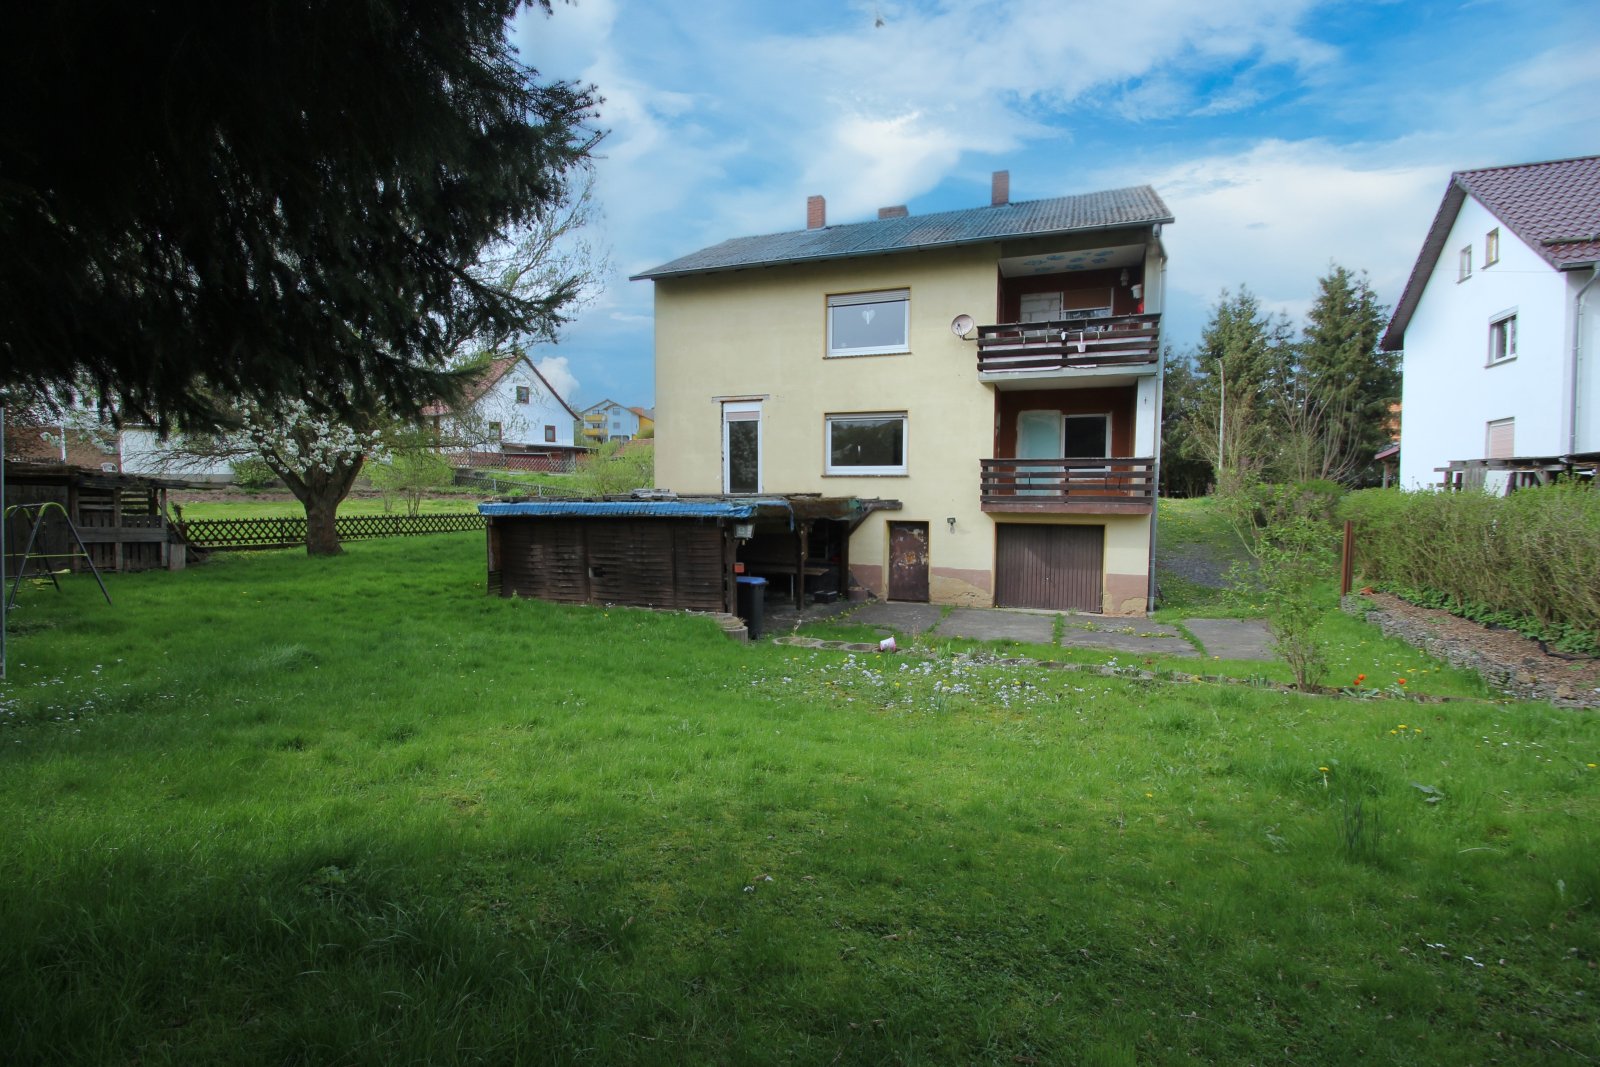 Nentershausen, 1-2 Familienhaus